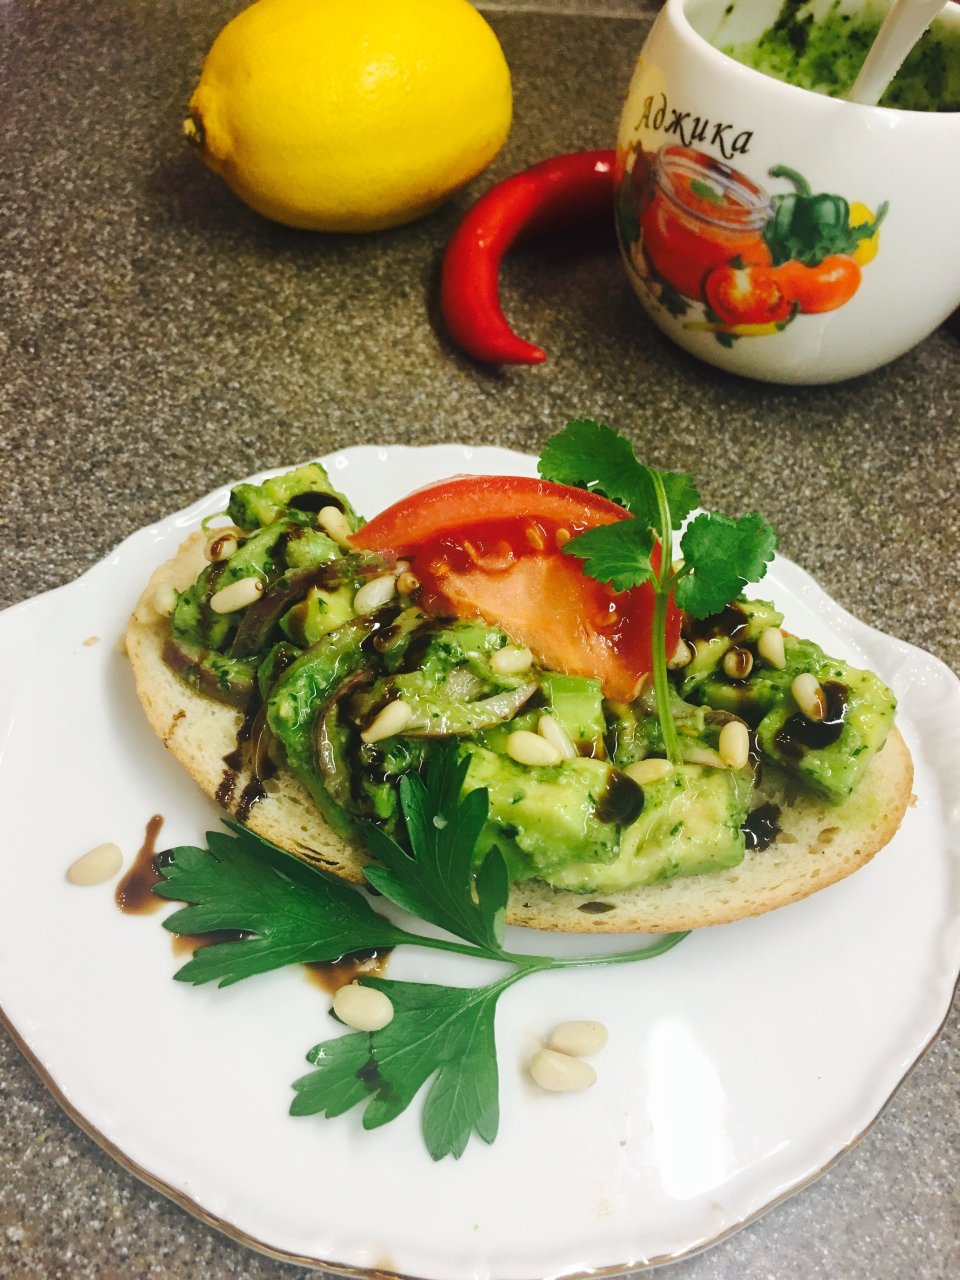 Экзотический постный бутерброд с авокадо и кедровыми орешками.